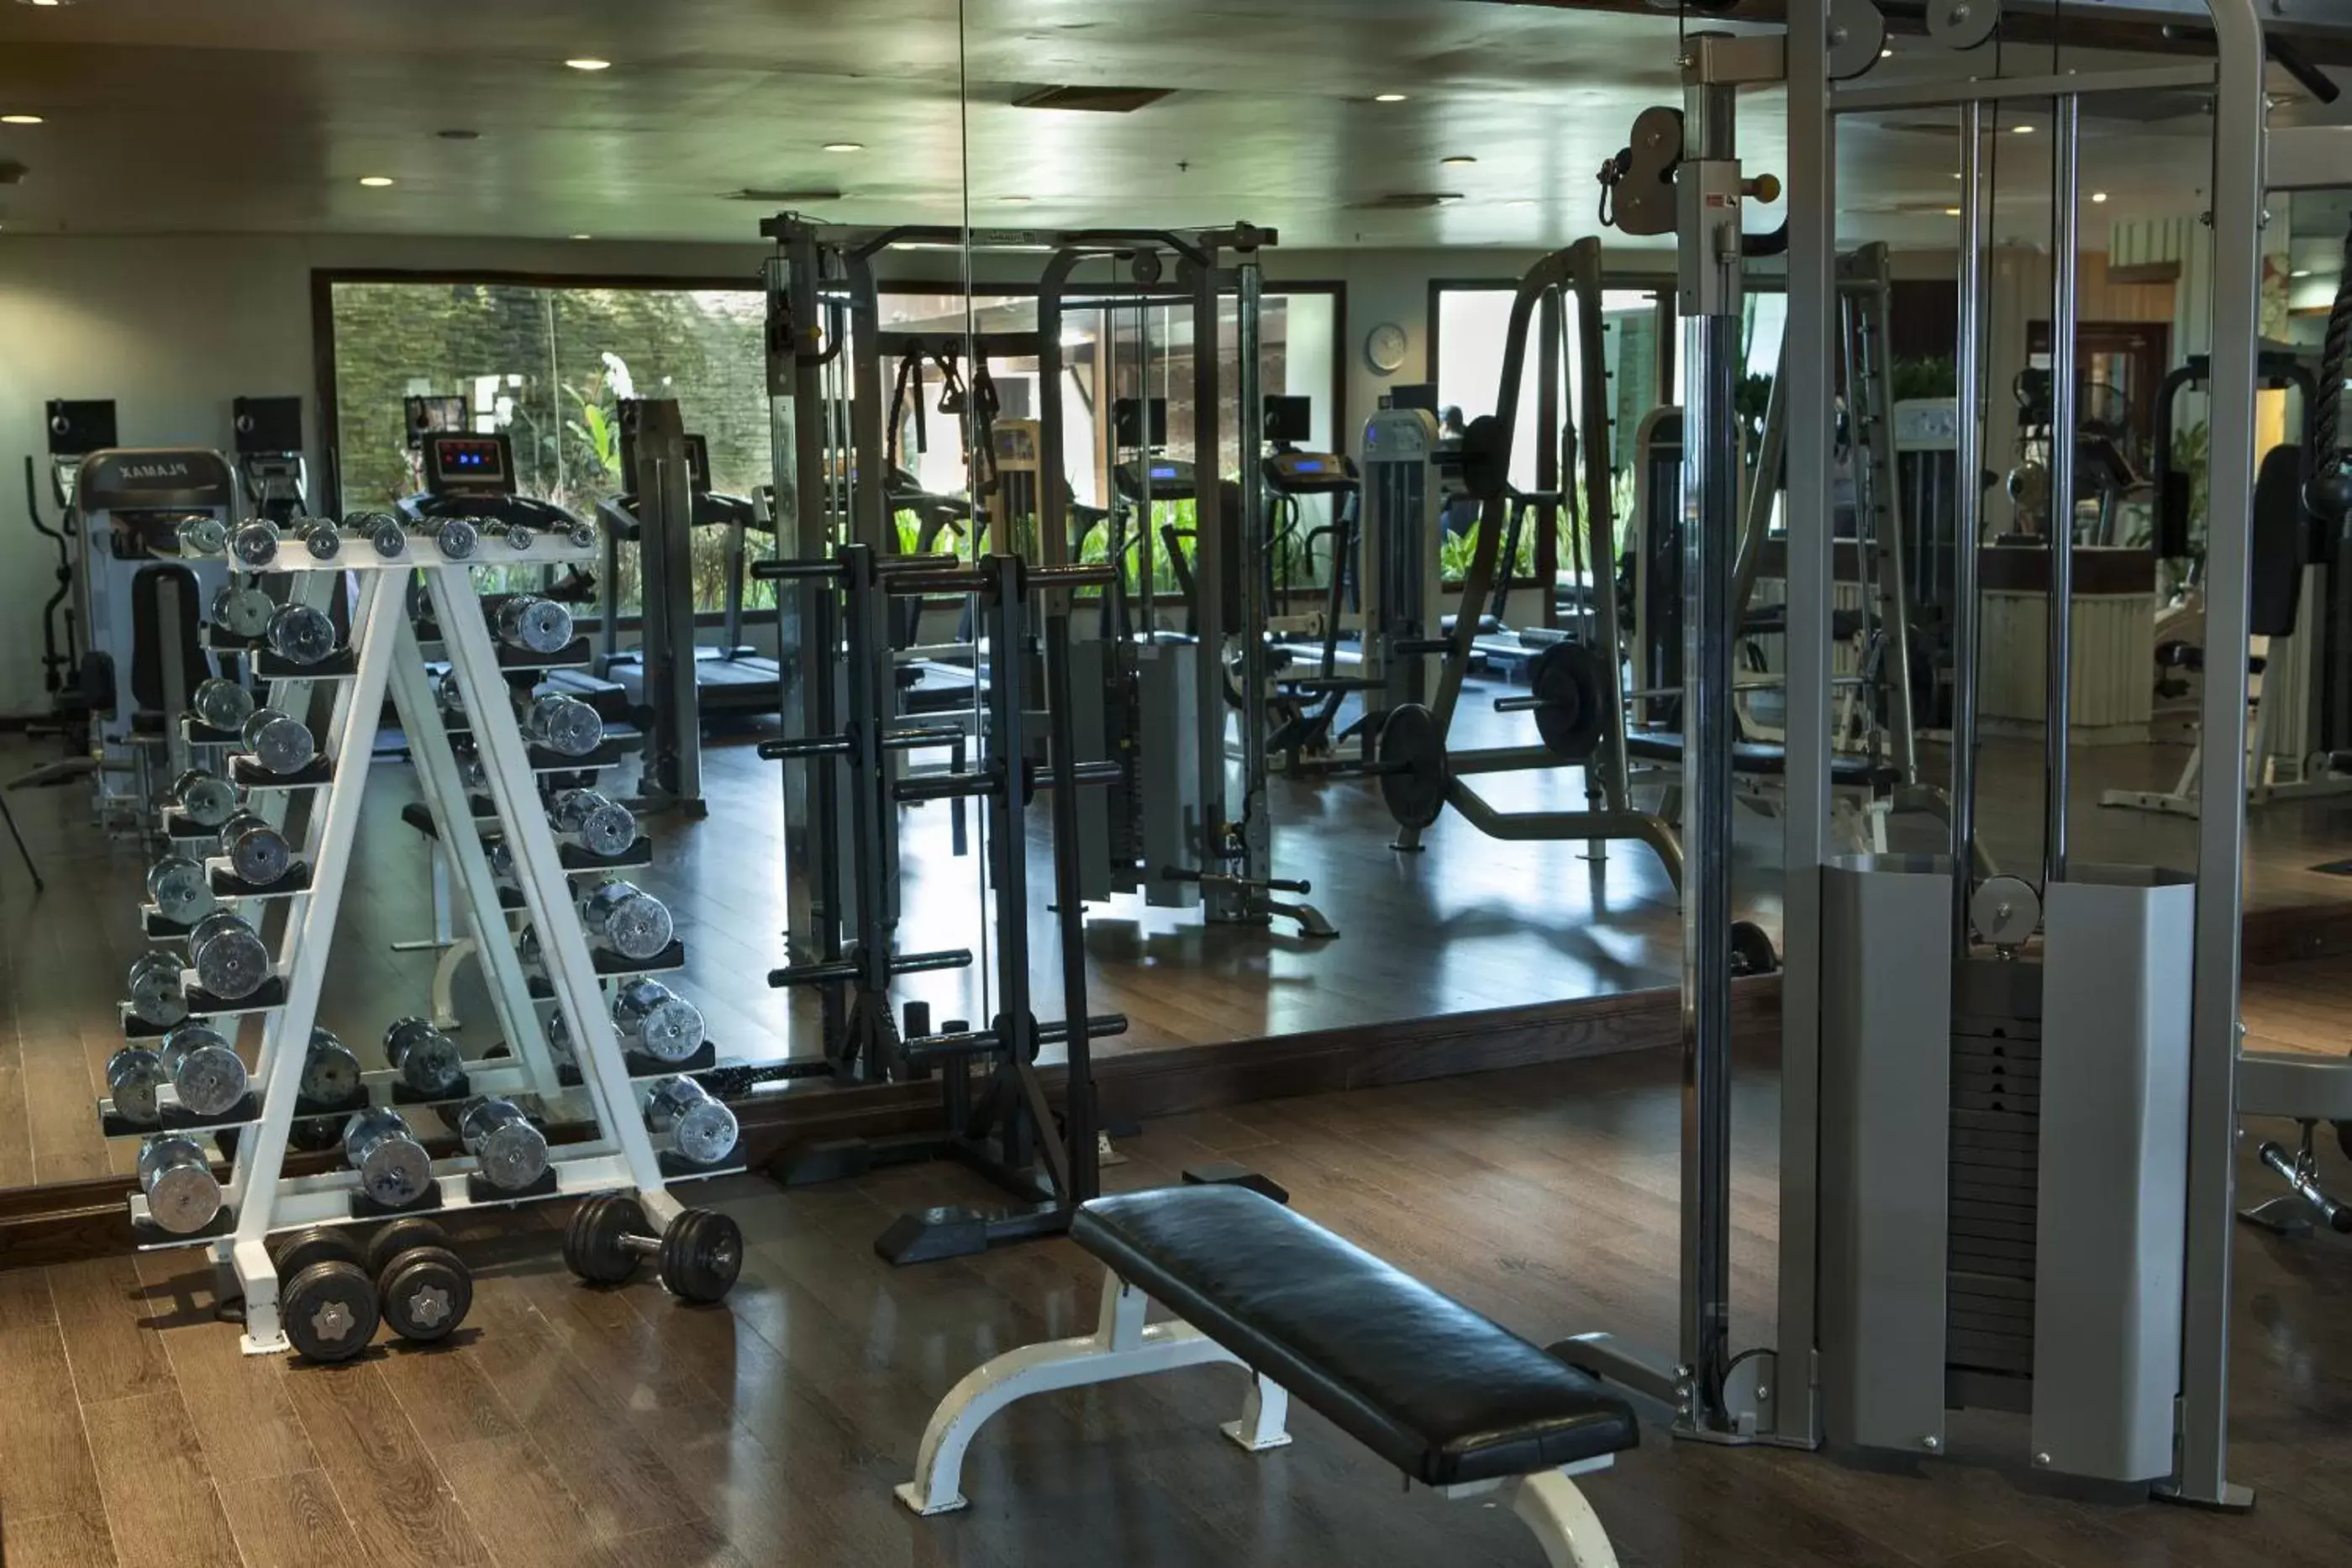 Fitness centre/facilities, Fitness Center/Facilities in RatiLanna Riverside Spa Resort